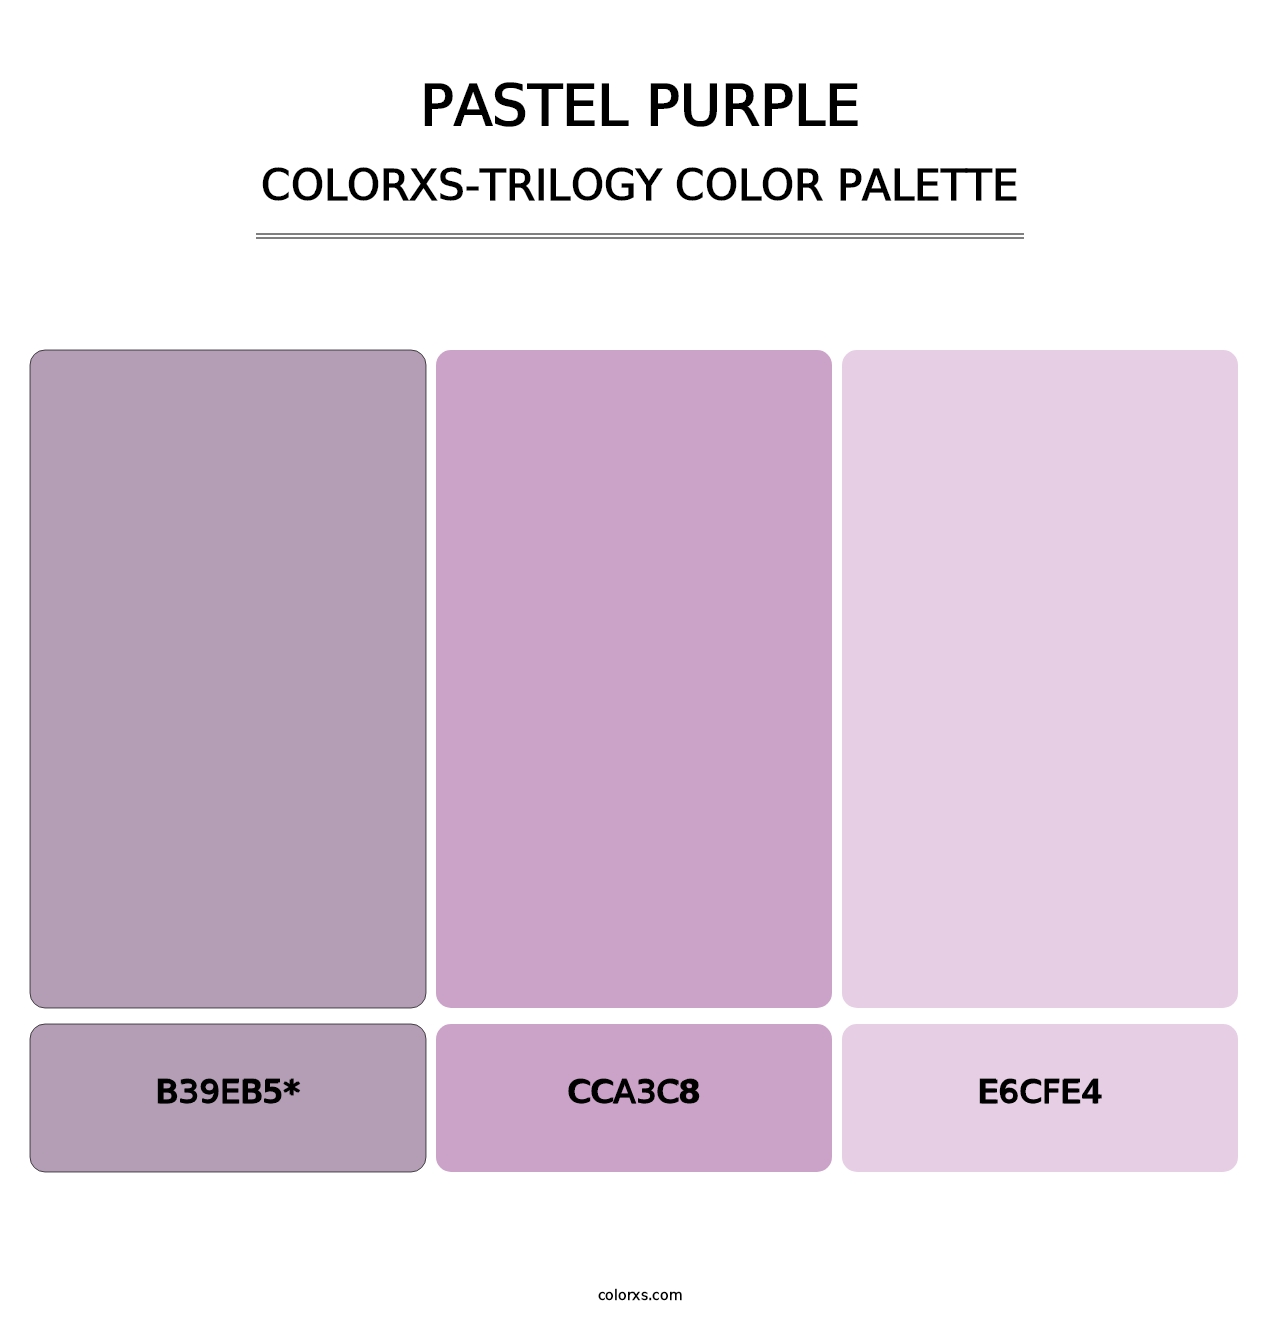 Pastel Purple - Colorxs Trilogy Palette